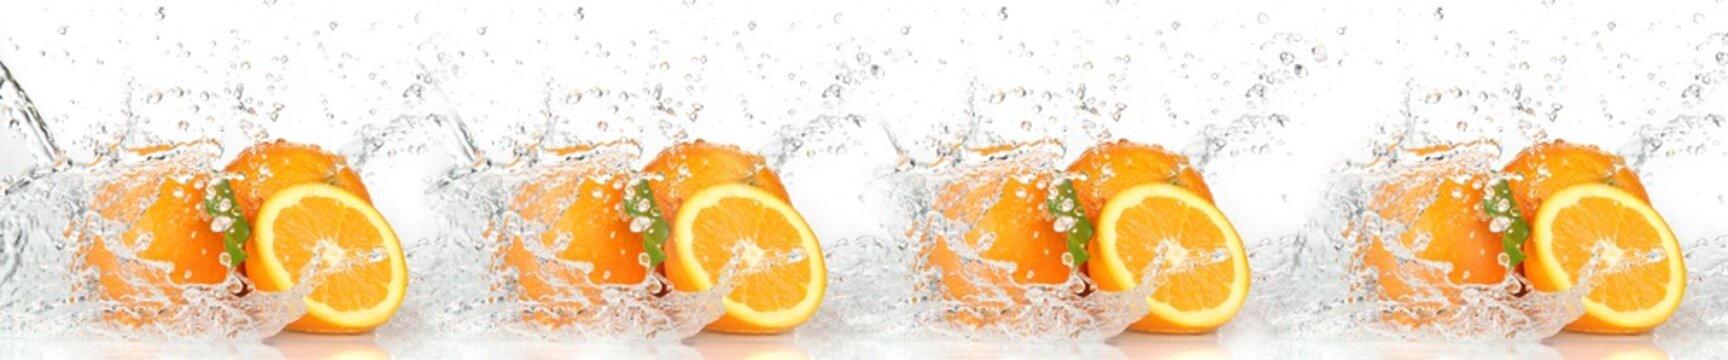 orange in the water © Piotr